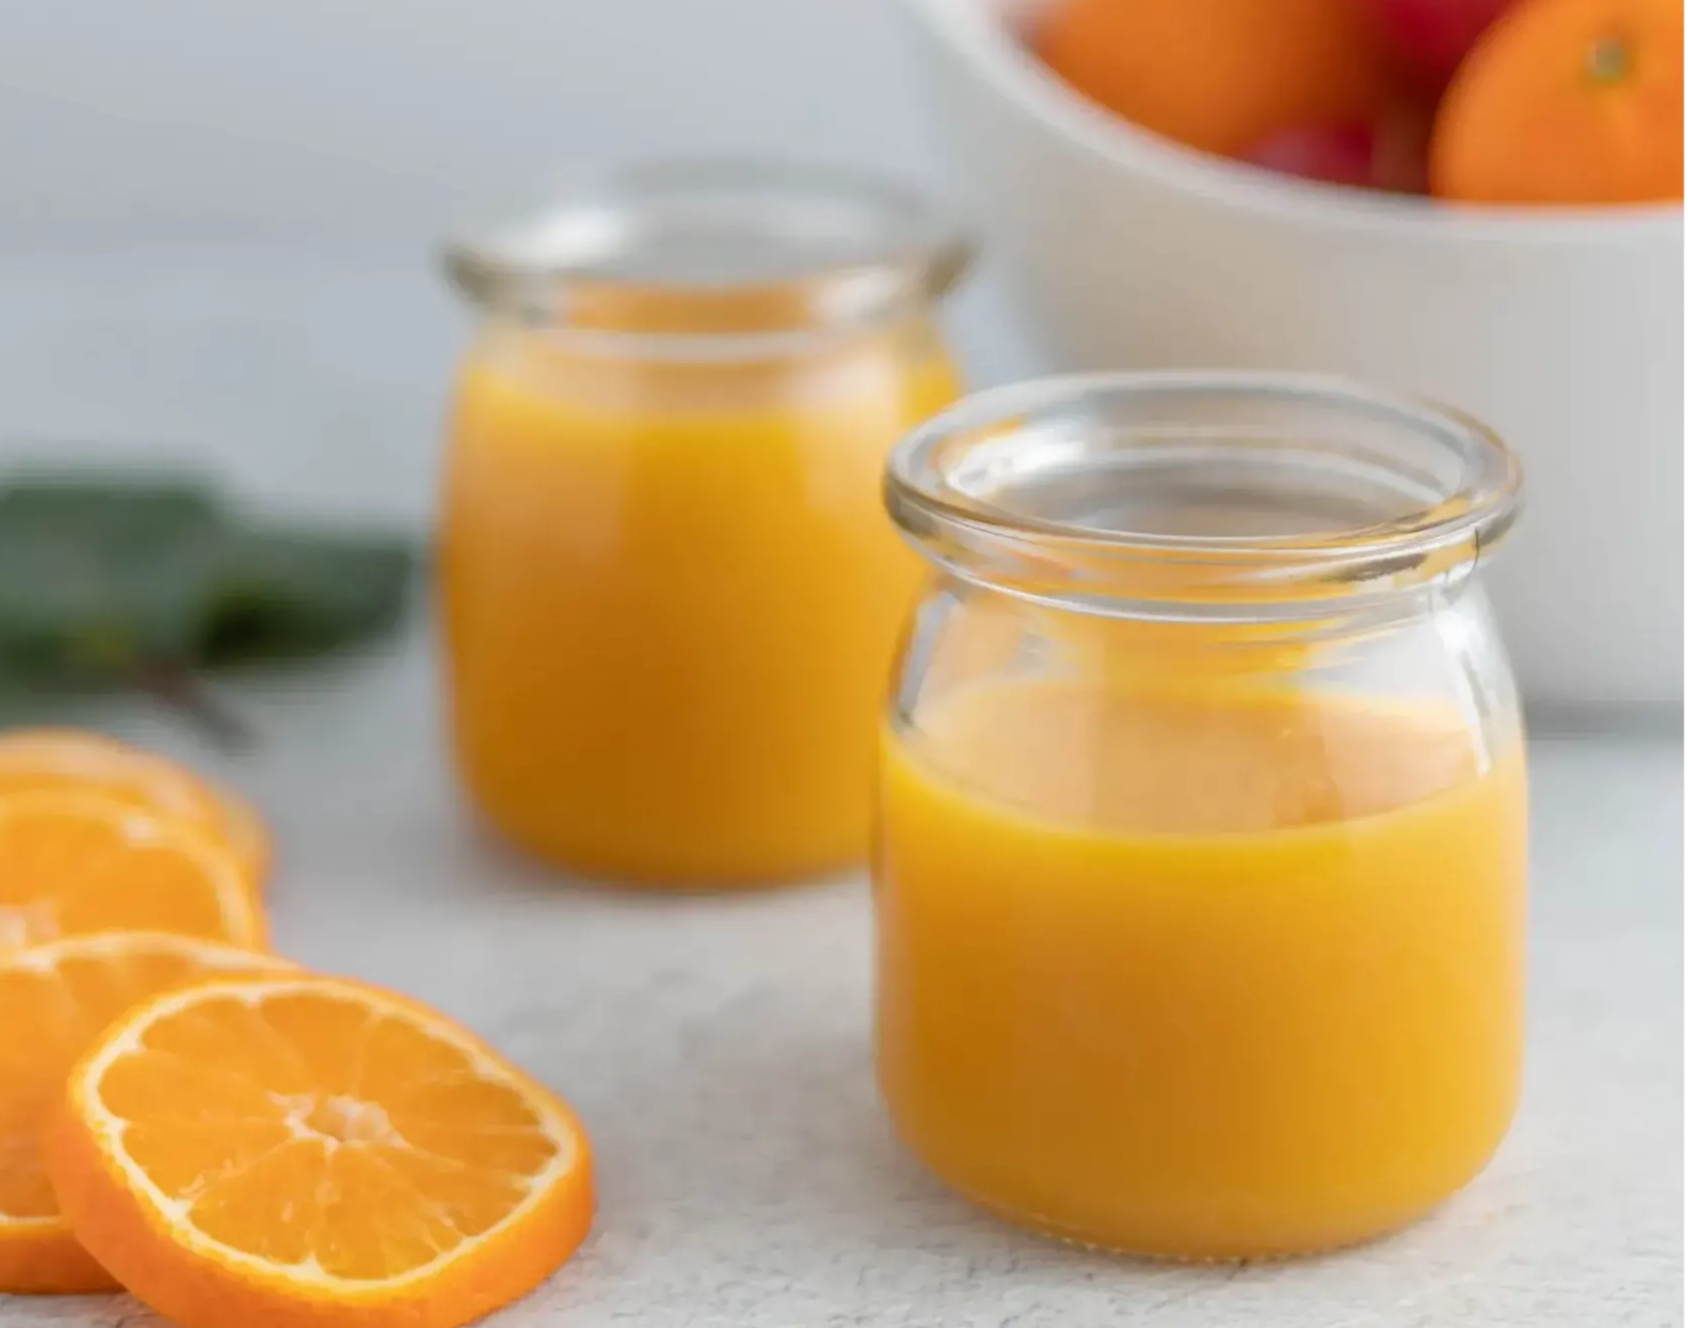 Two orange juice glasses